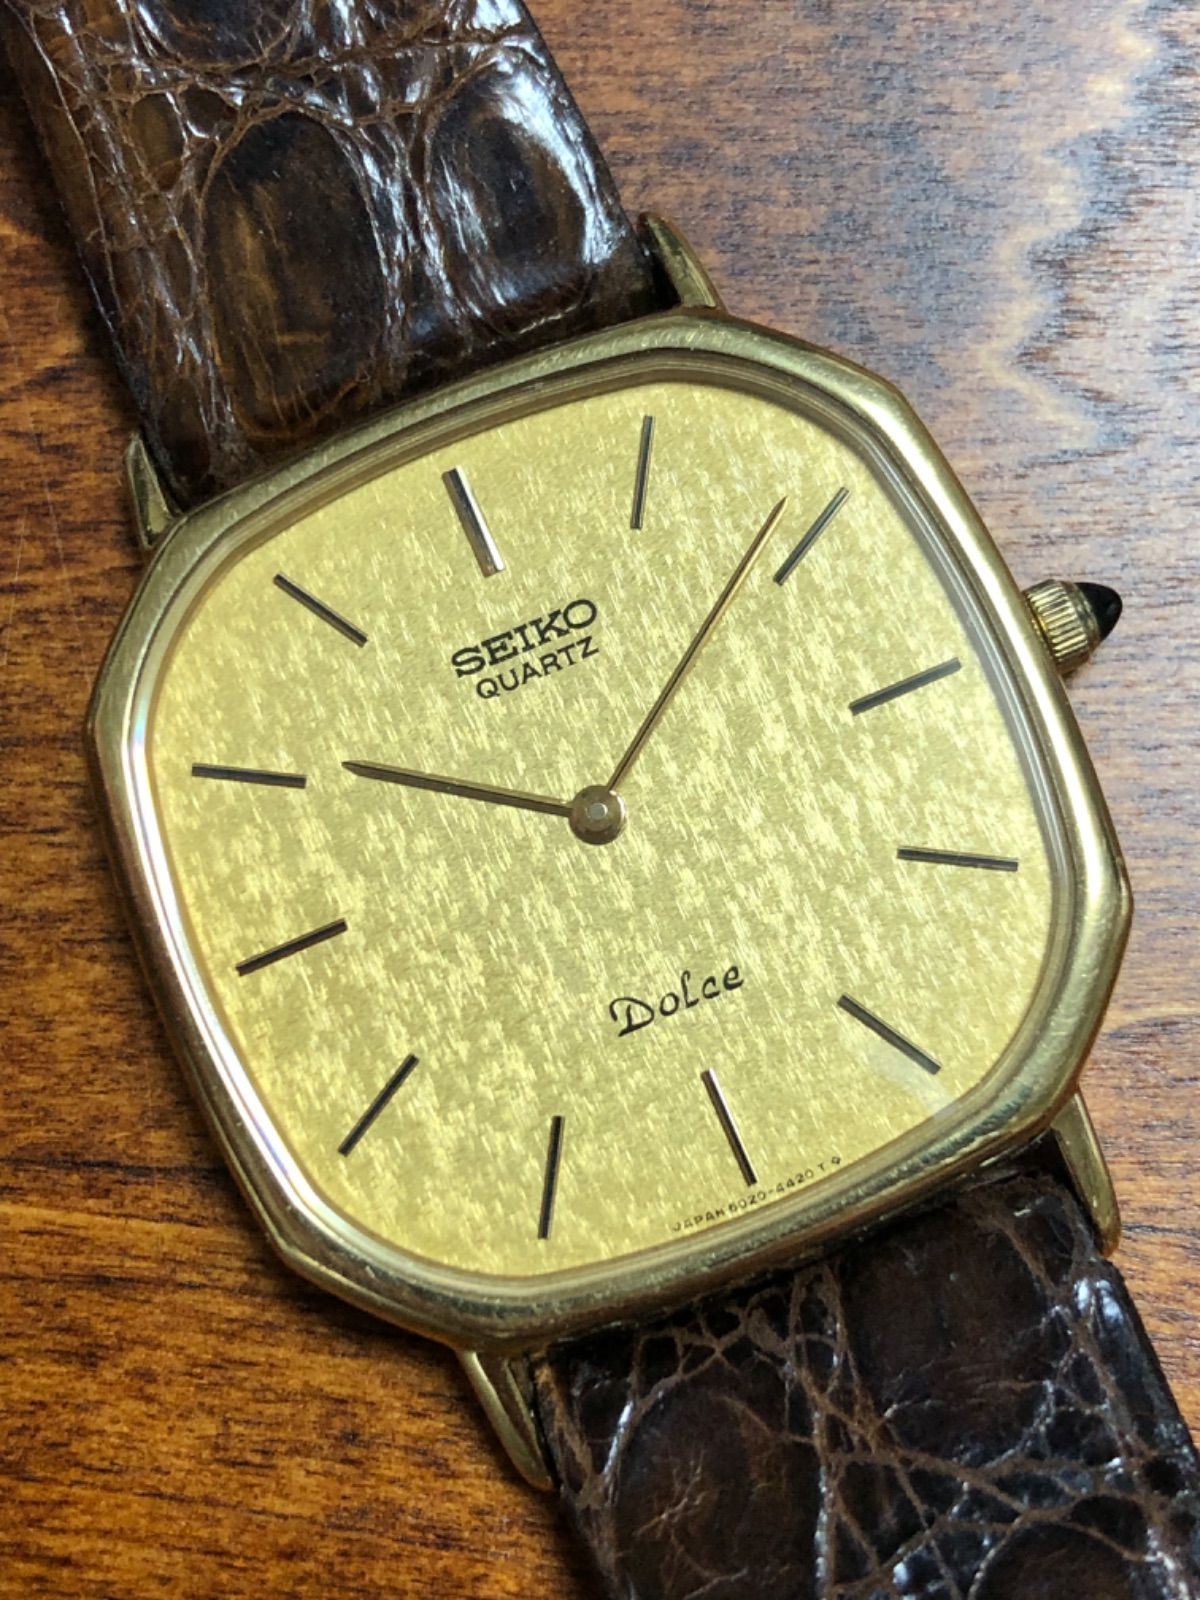 SEIKO(セイコー) DOLCE ドルチェ 腕時計 ゴールド 9521-5070 ...